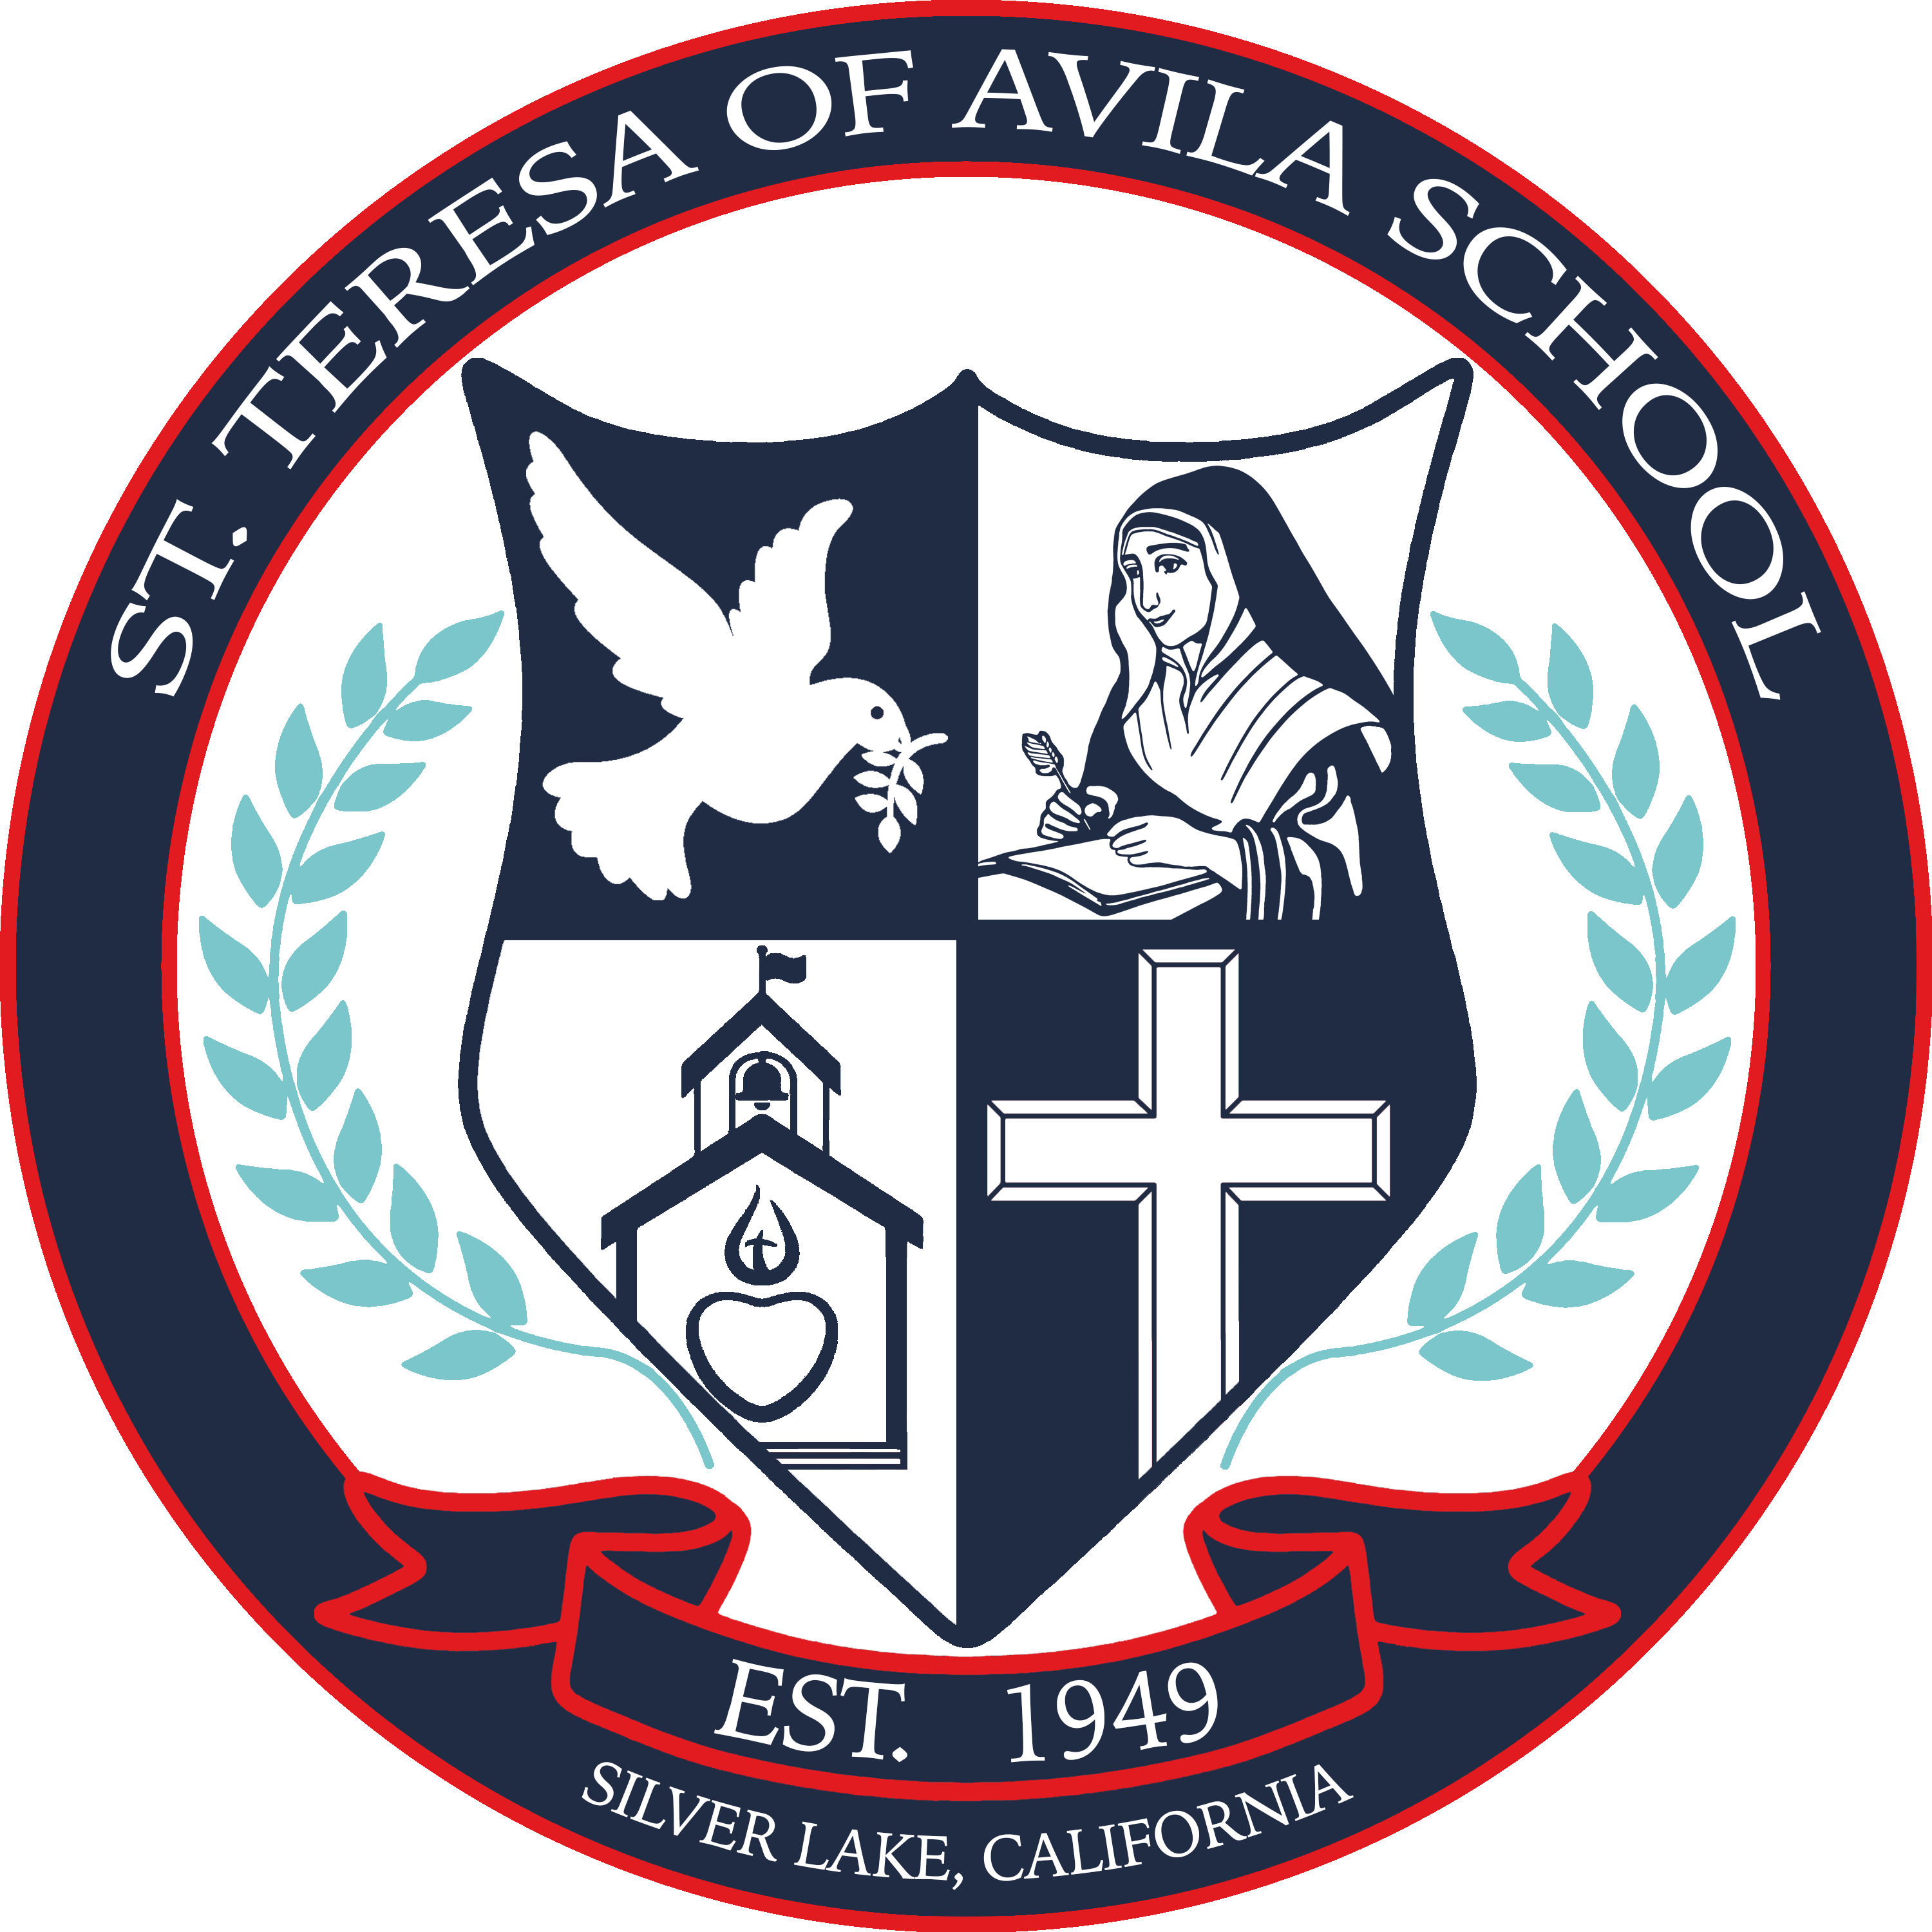 St. Teresa of Avila Catholic School